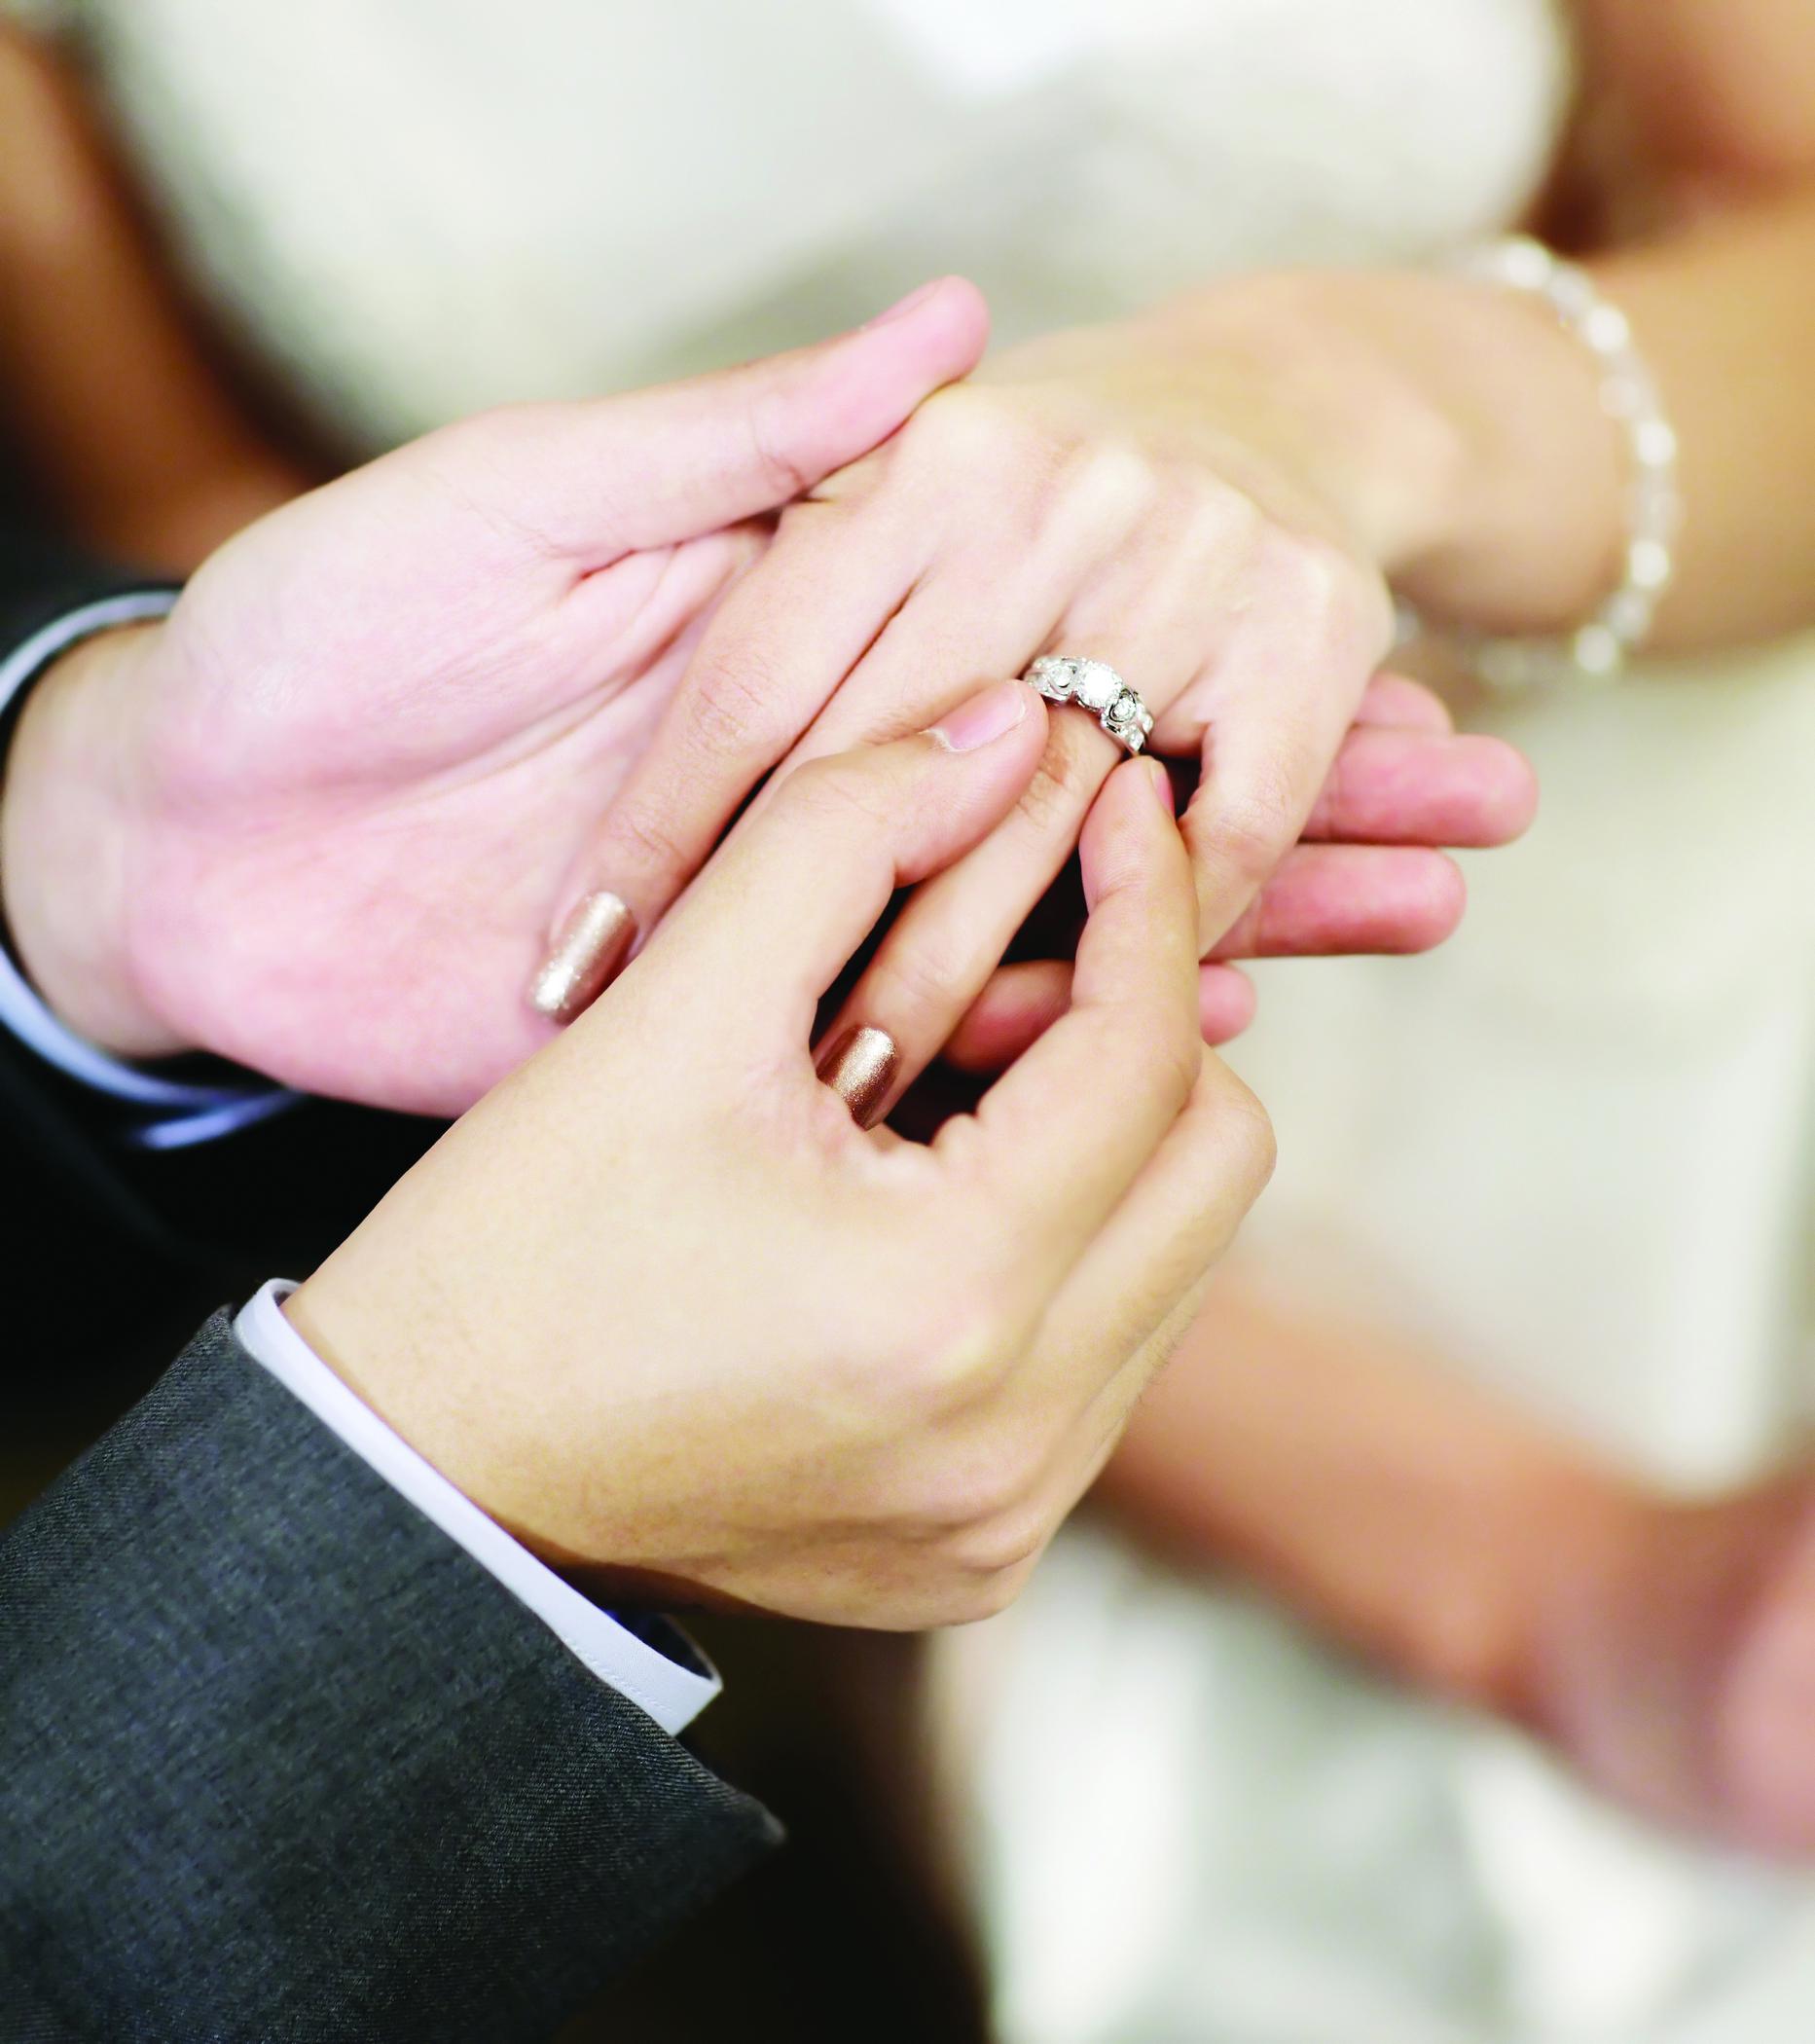 Скорое замужество. Обручальные кольца на руках. Обручальное кольцо на пальце. Красивые обручальные кольца на руках. Свадебные кольца на пальцах.